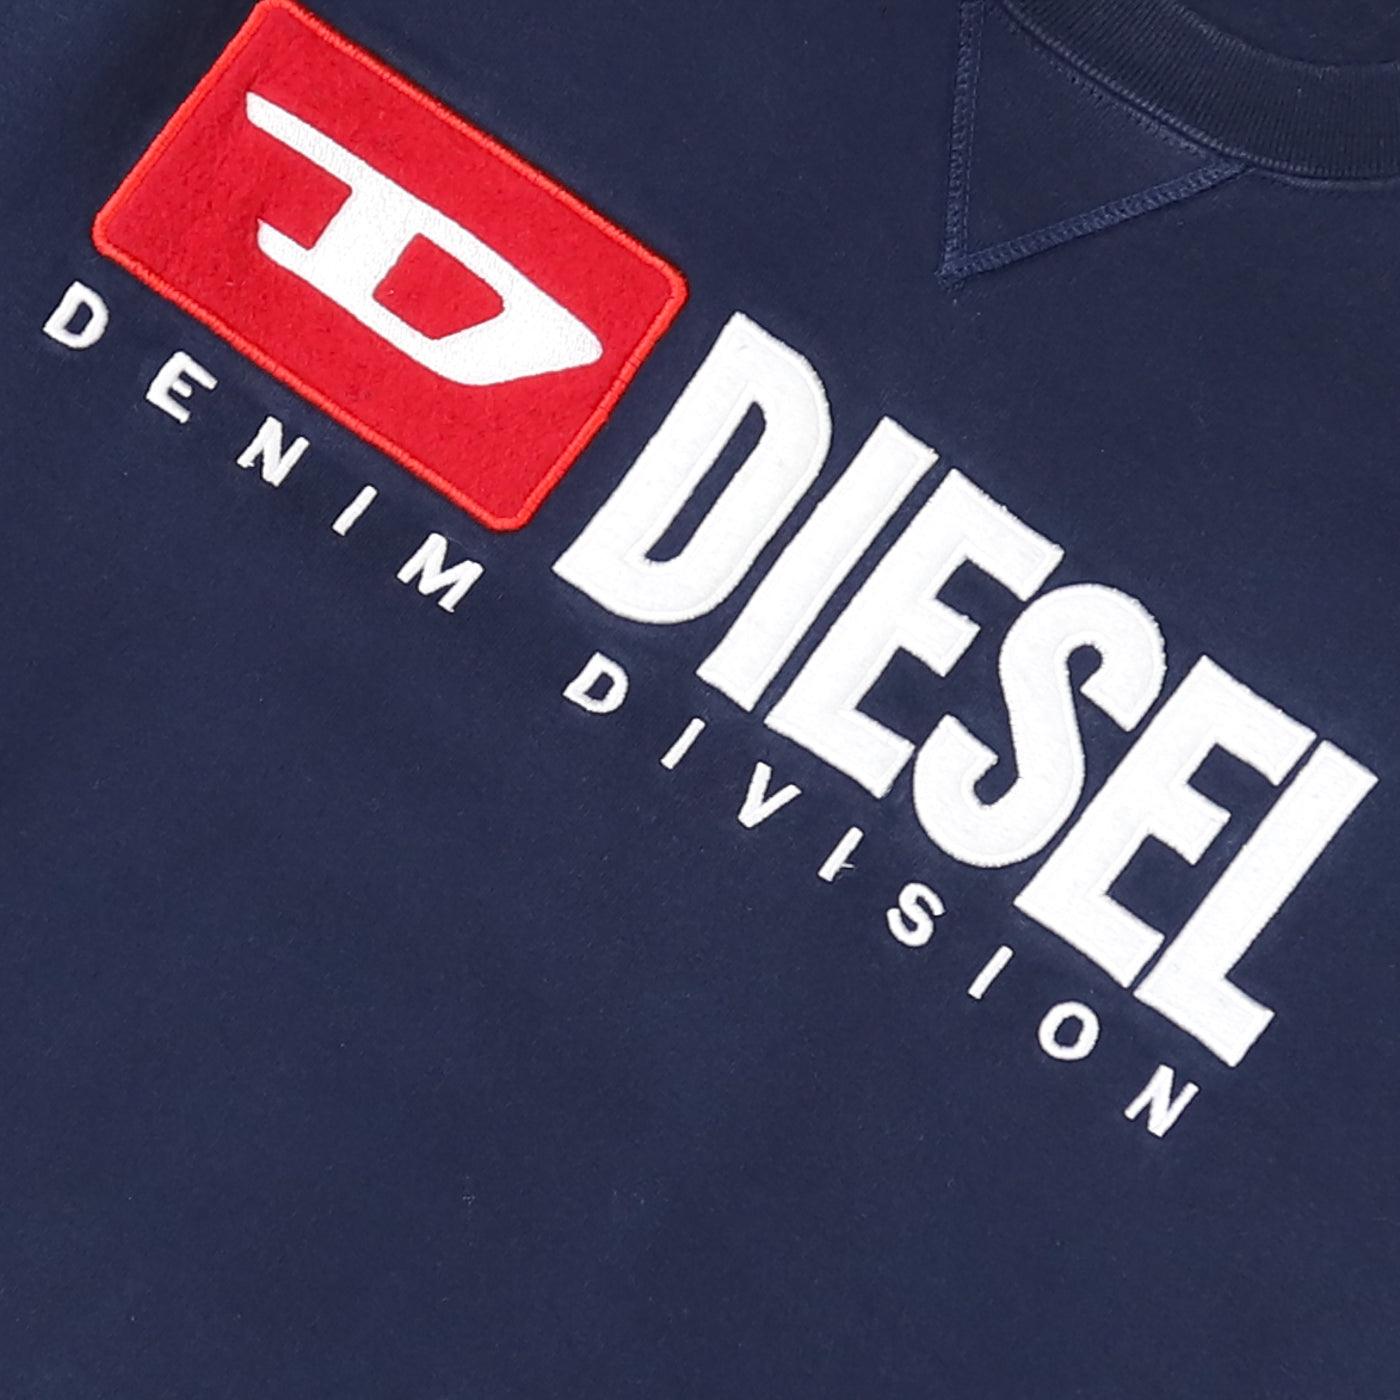 Diesel Vintage Sweatshirt - Small - Known Source